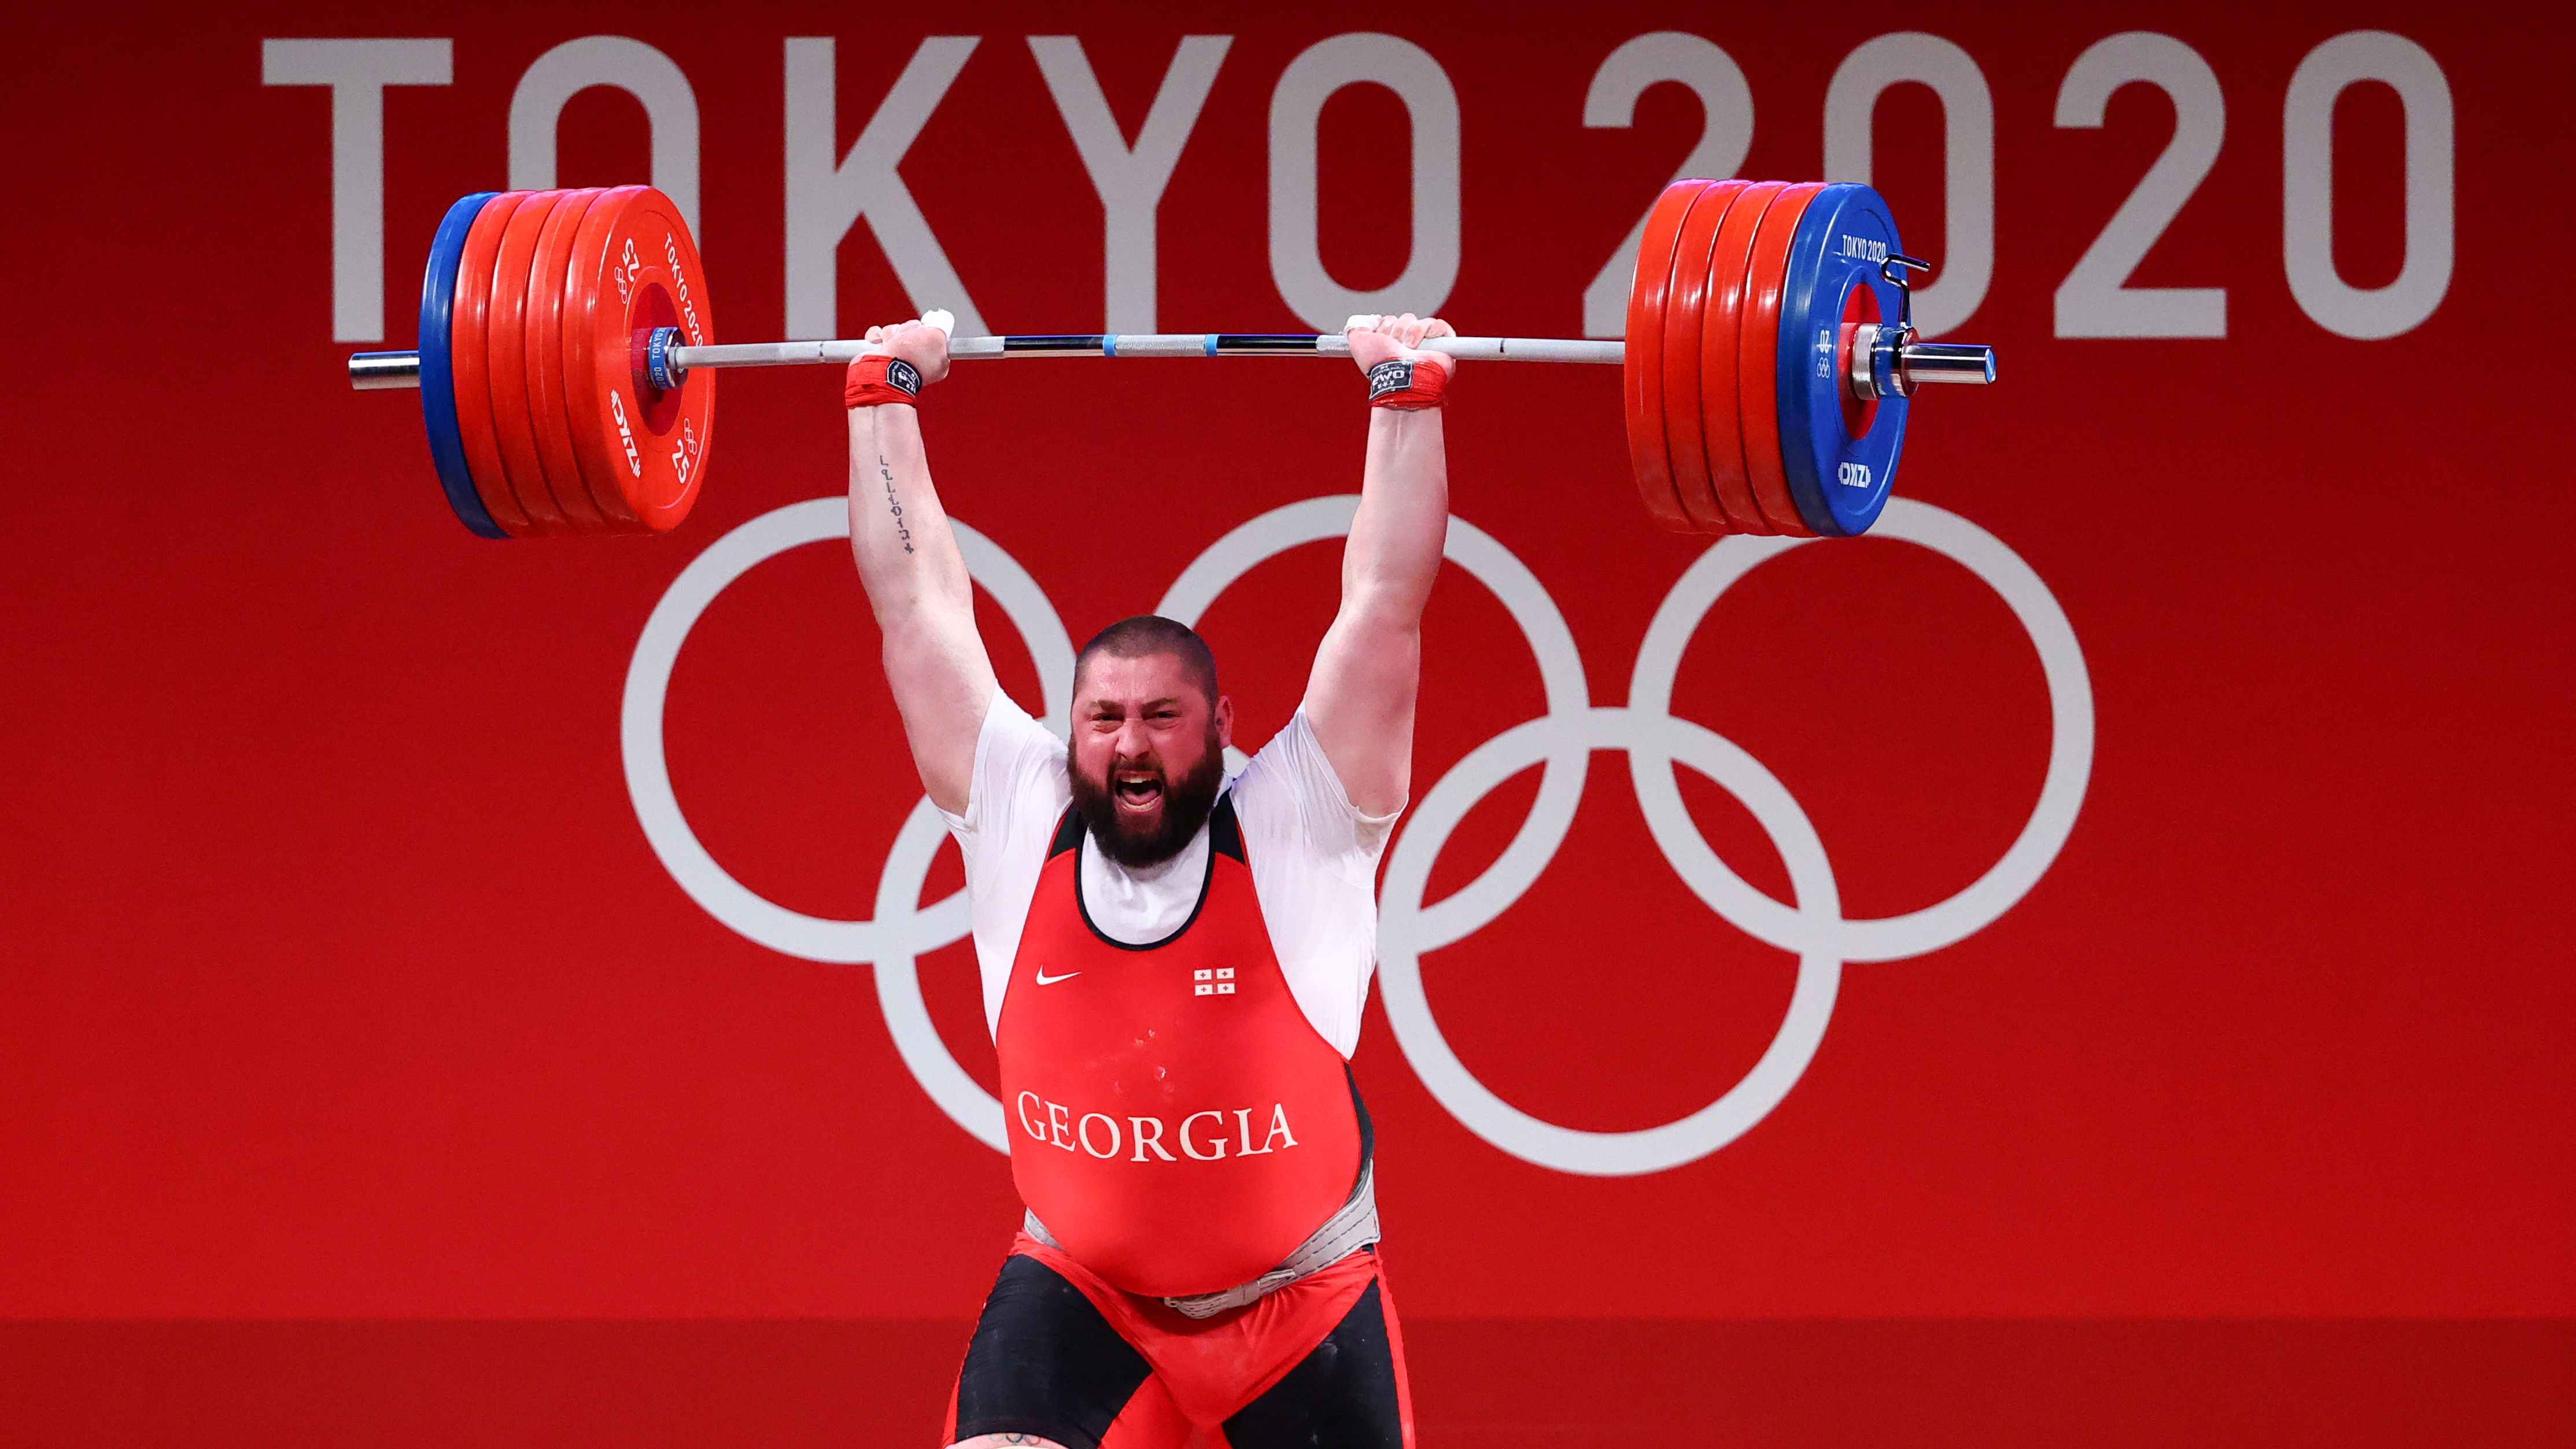 El impactante triple récord mundial y olímpico que logró un pesista de Georgia al levantar 488 kilos